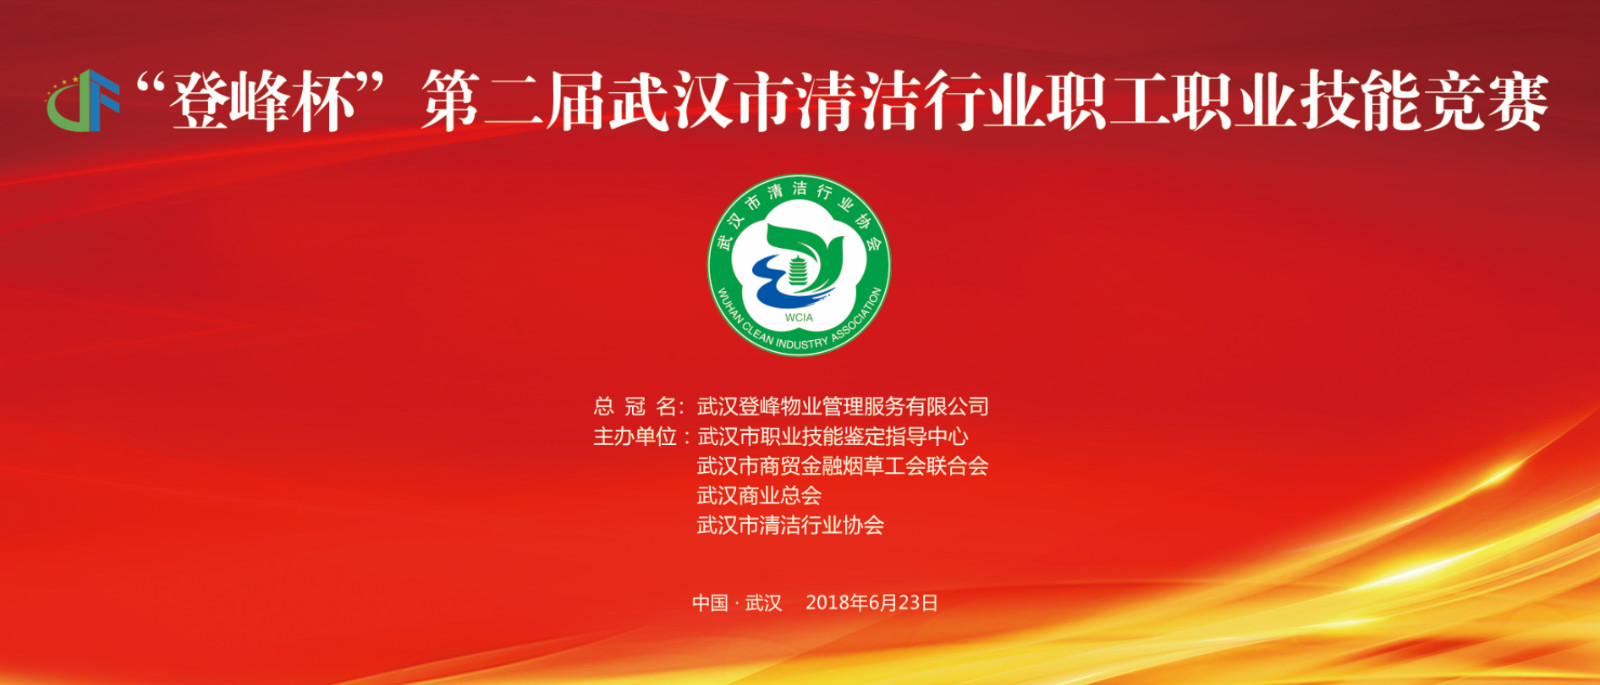 【协会动态】 一一“登峰杯”第二届武汉市清洁行业职工职业技能竞赛成功举行